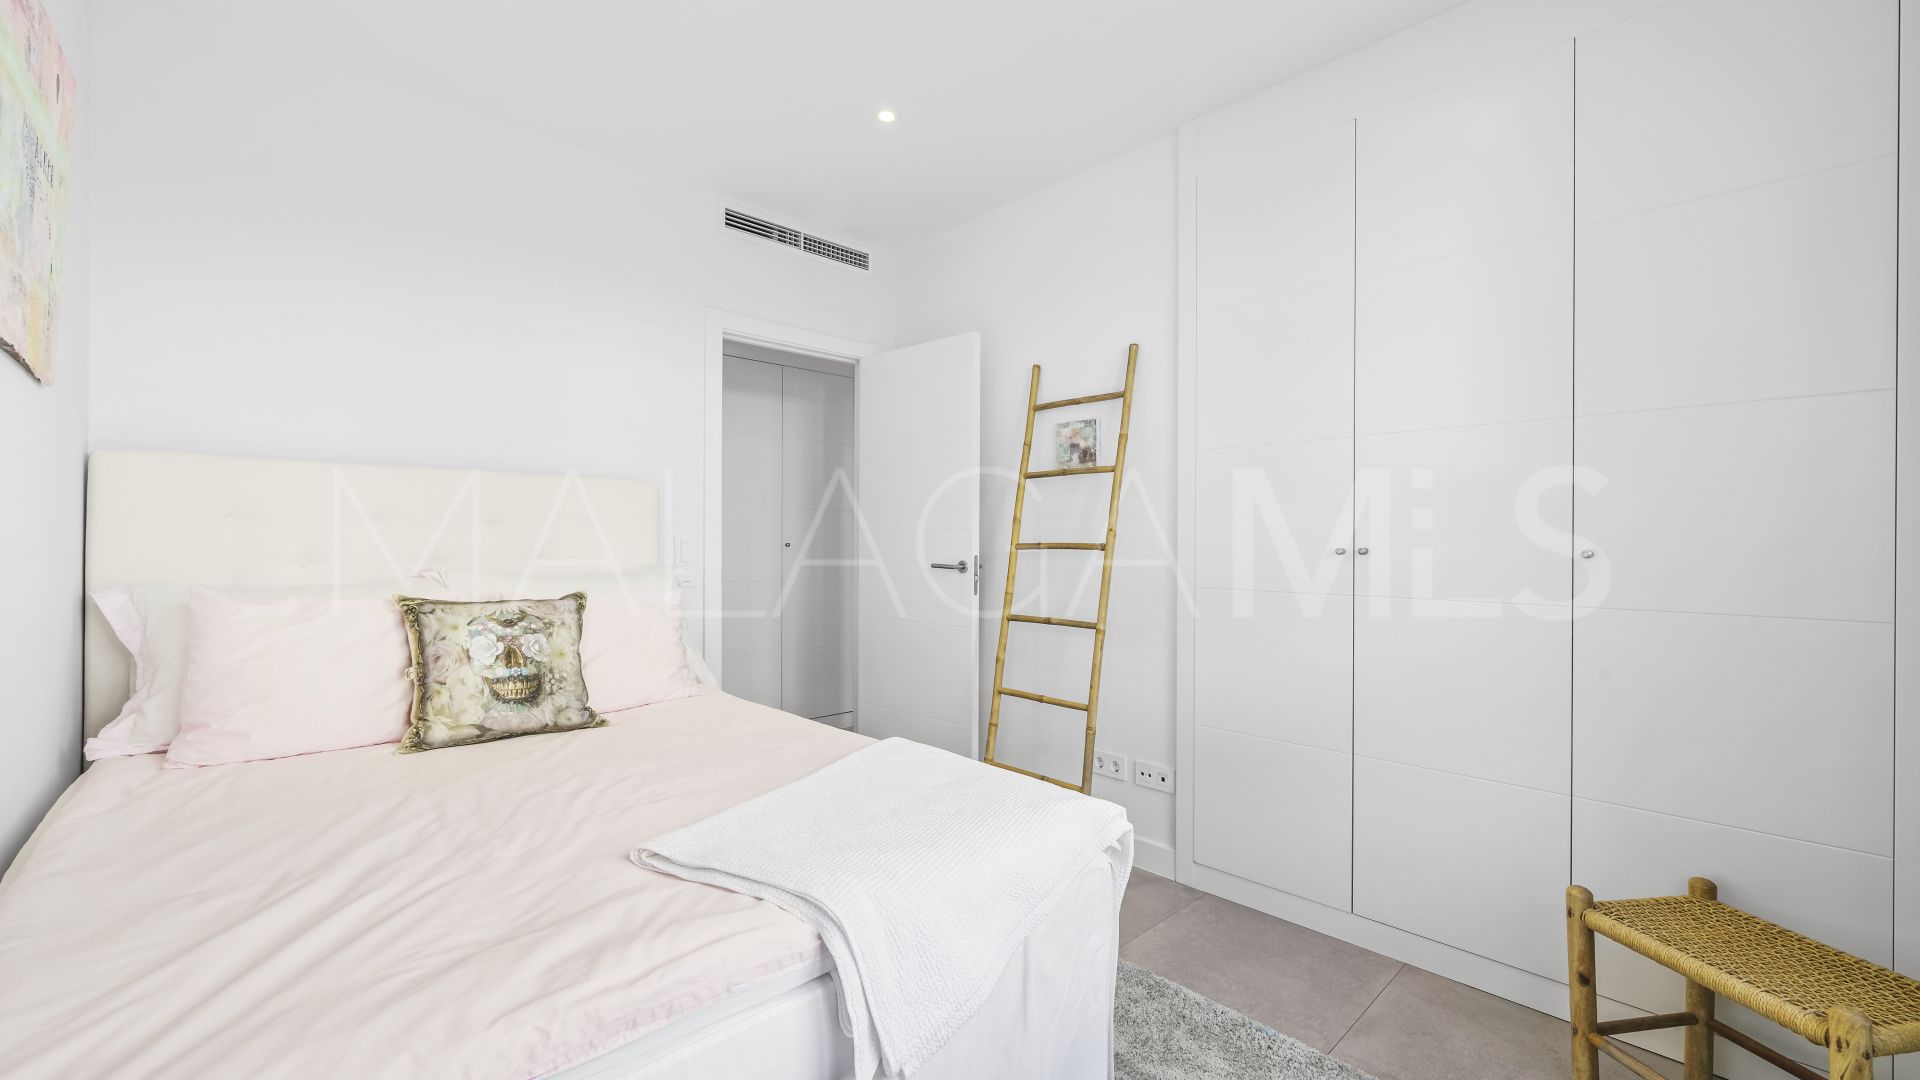 Cala de Mijas, apartamento planta baja for sale with 3 bedrooms